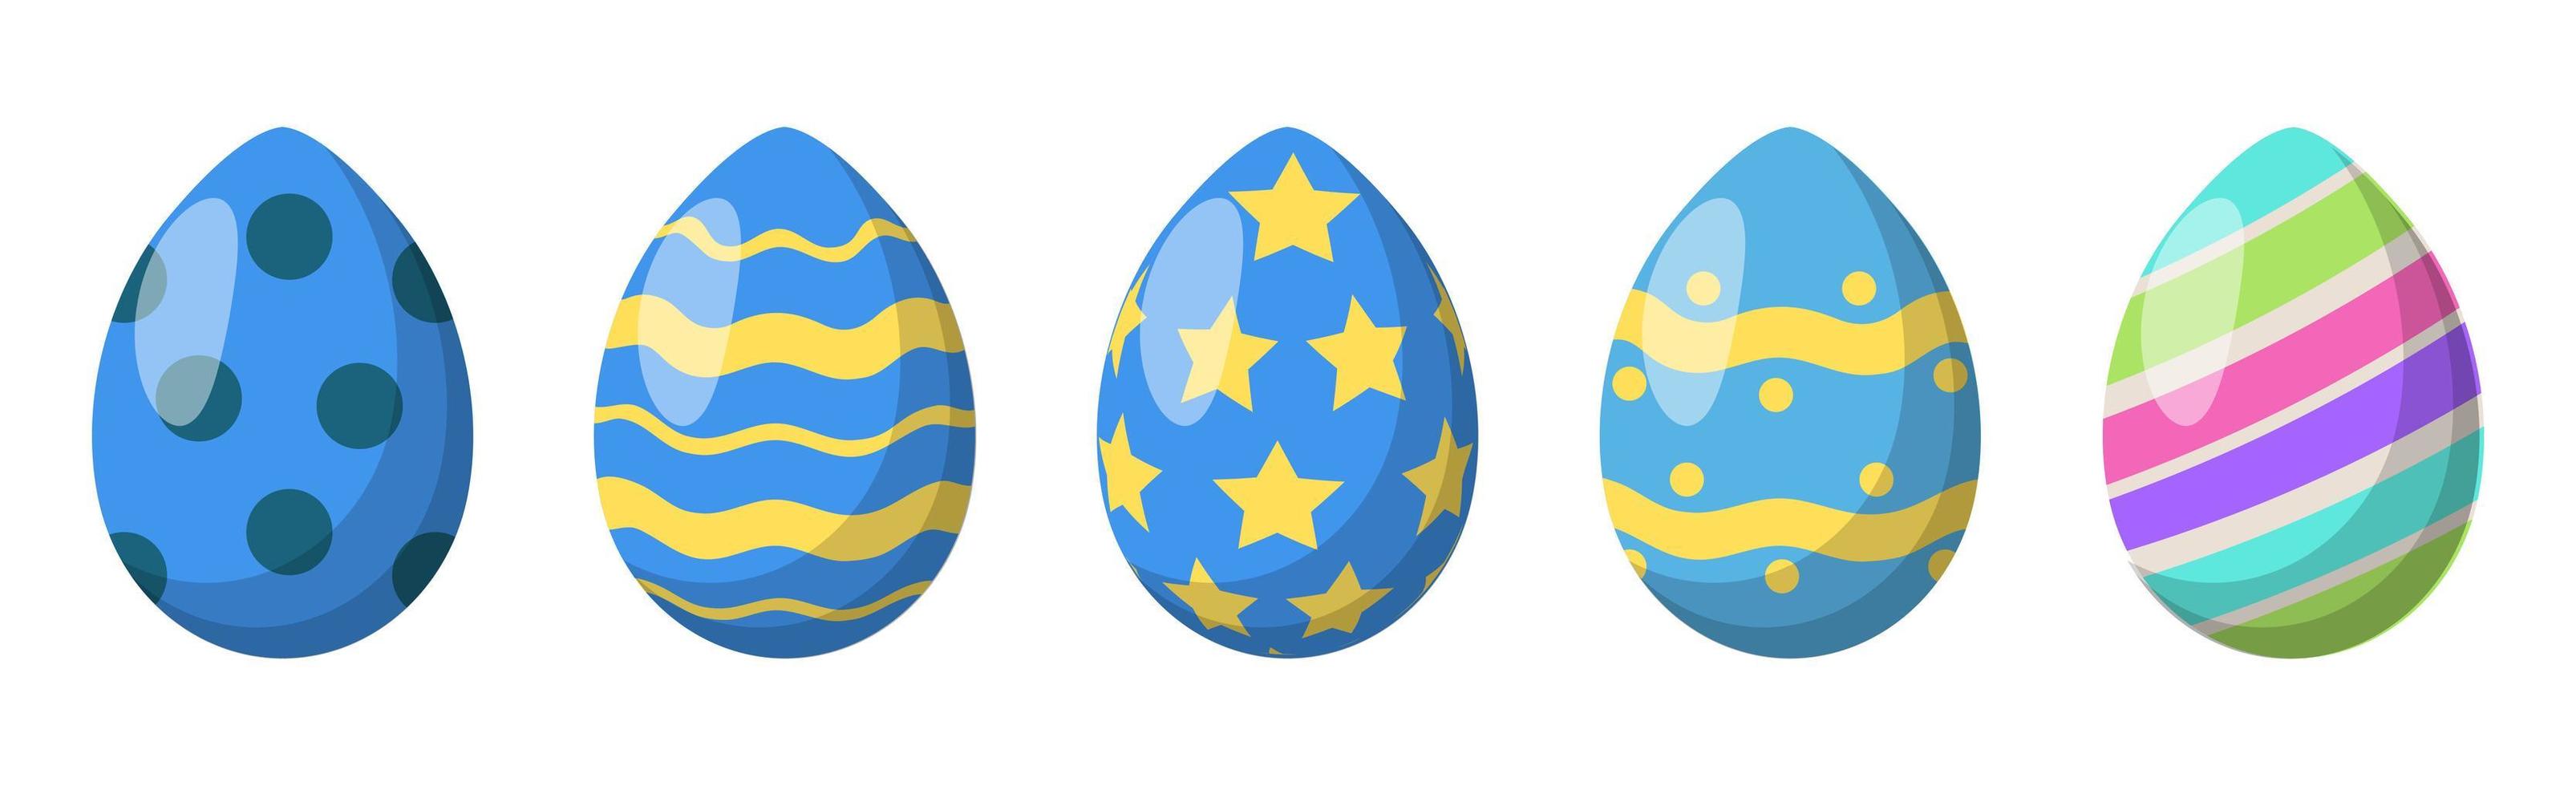 conjunto de 5 huevos de pascua coloridos diferentes - vector